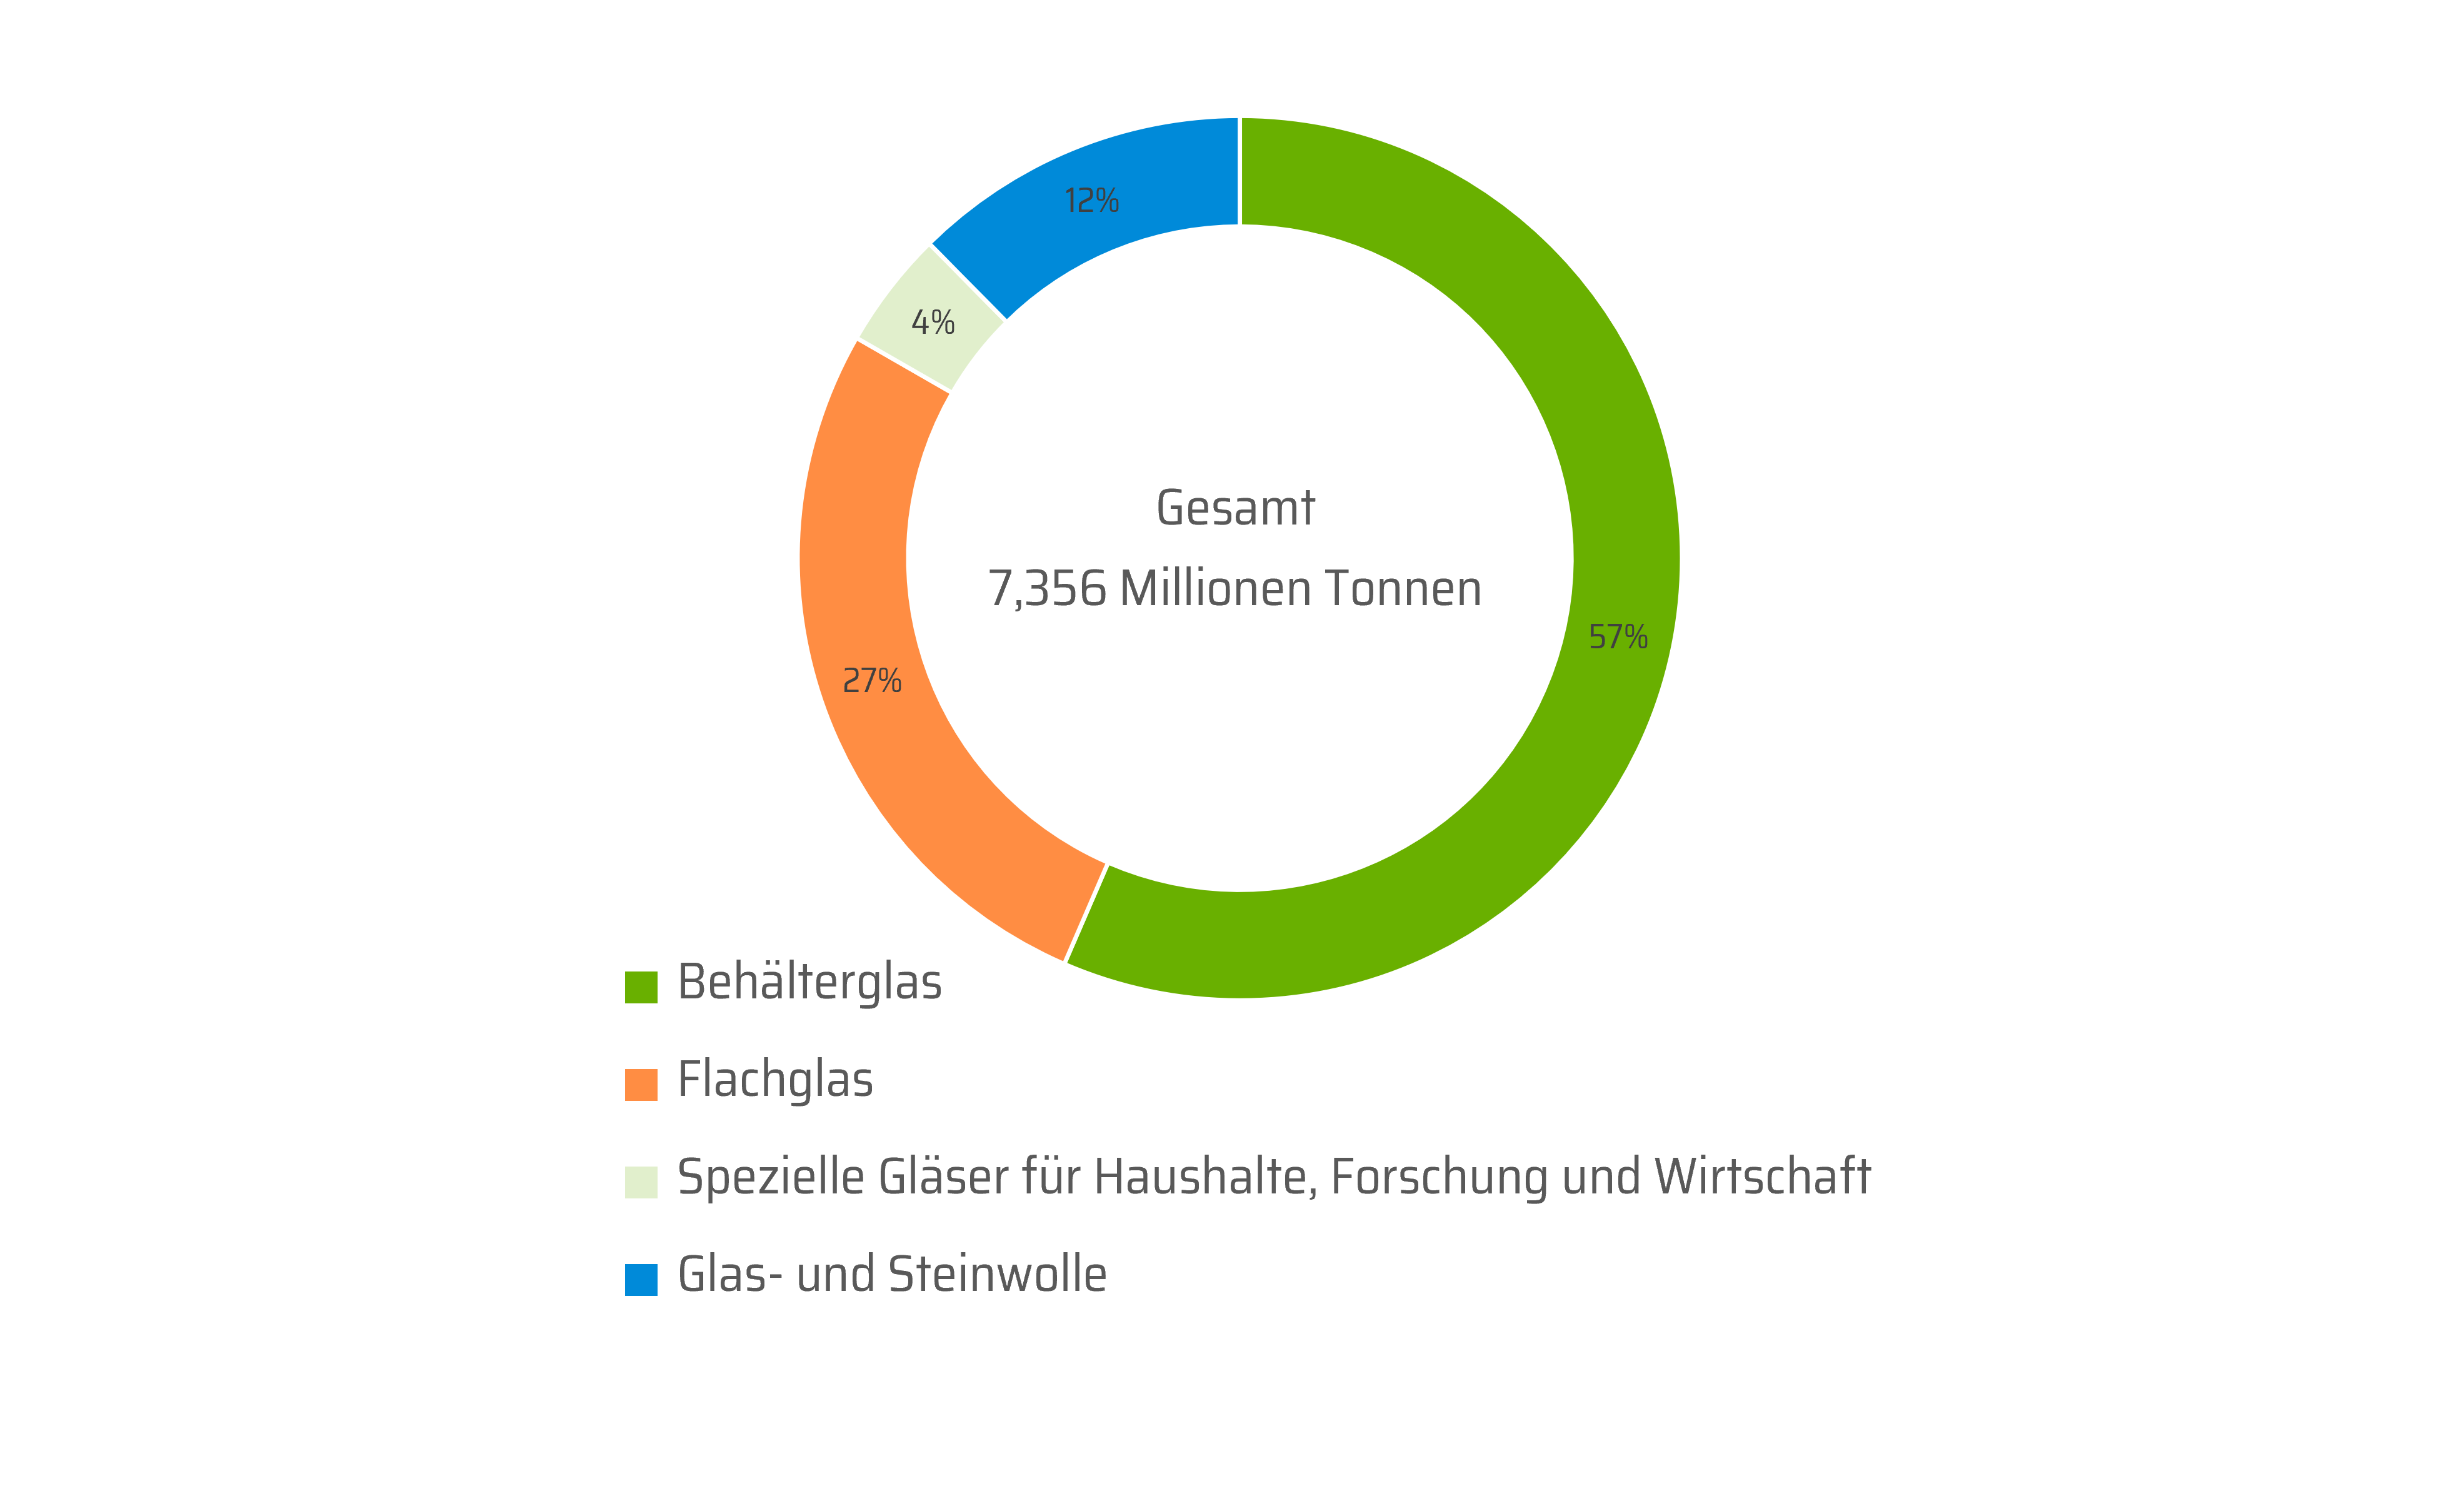 Dieses Kreisdiagramm zeigt die prozentualen Anteile von Behälterglas (57%), Flachglas (27%), speziellen Gläsern für Haushalte, Forschung und Wirtschaft (4%) und von Glas- und Steinwolle (12%) in Deutschland. Die Angaben beziehen sich auf das Jahr 2020, in dem insgesamt 7,356 Millionen Tonnen Glas produziert wurden.